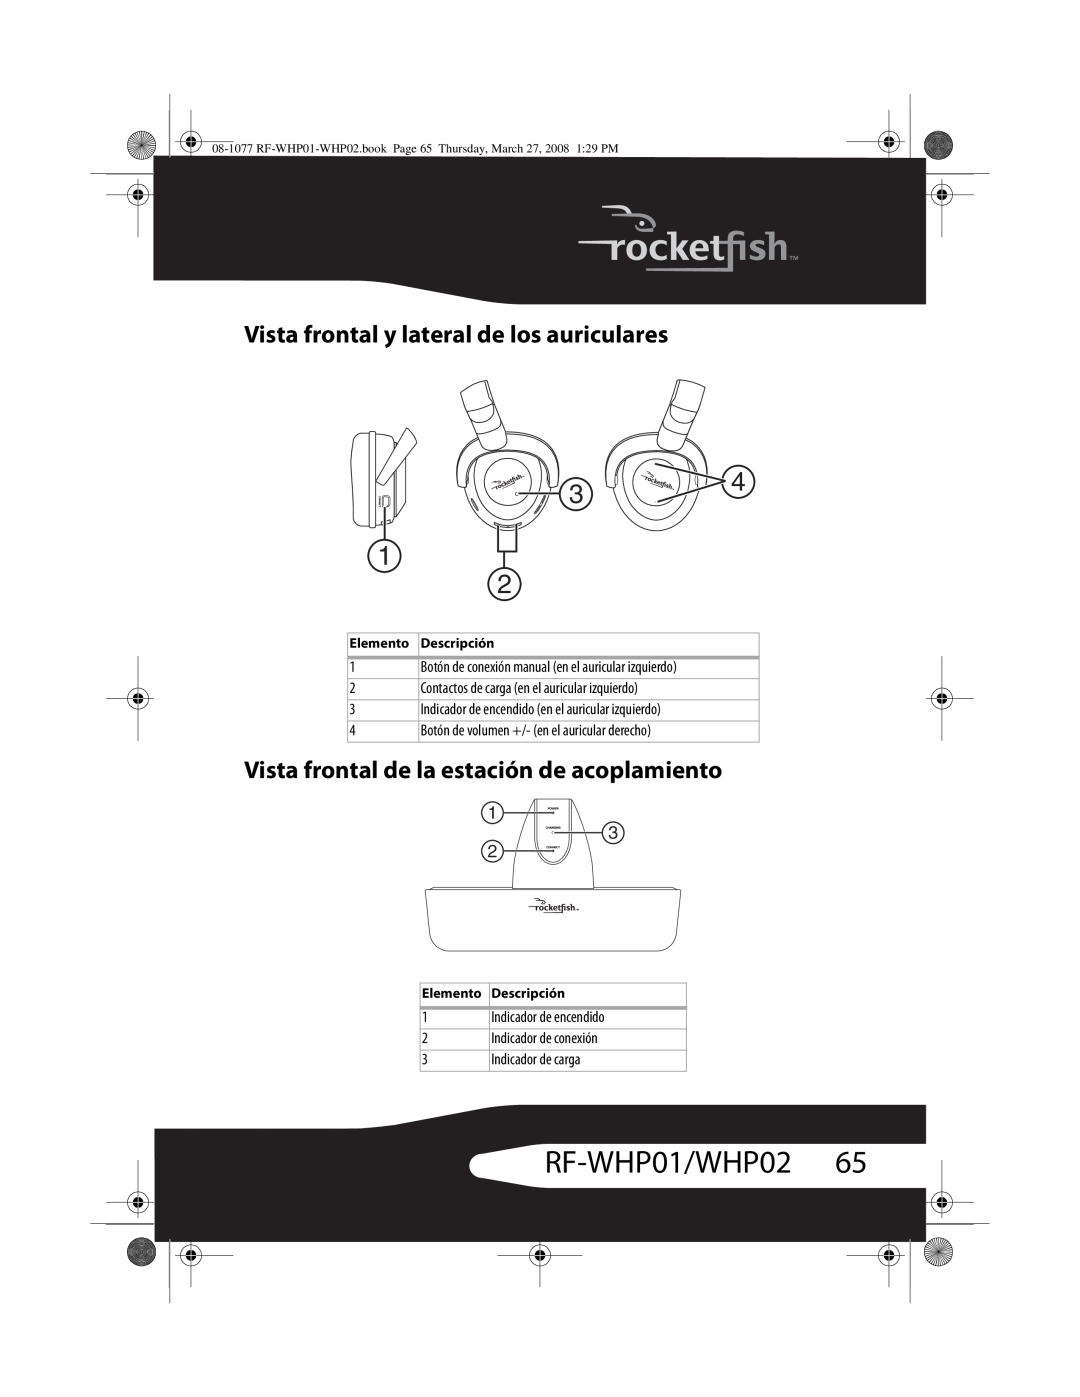 RocketFish RF-WHP02 manual RF-WHP01/WHP0265, Vista frontal y lateral de los auriculares 